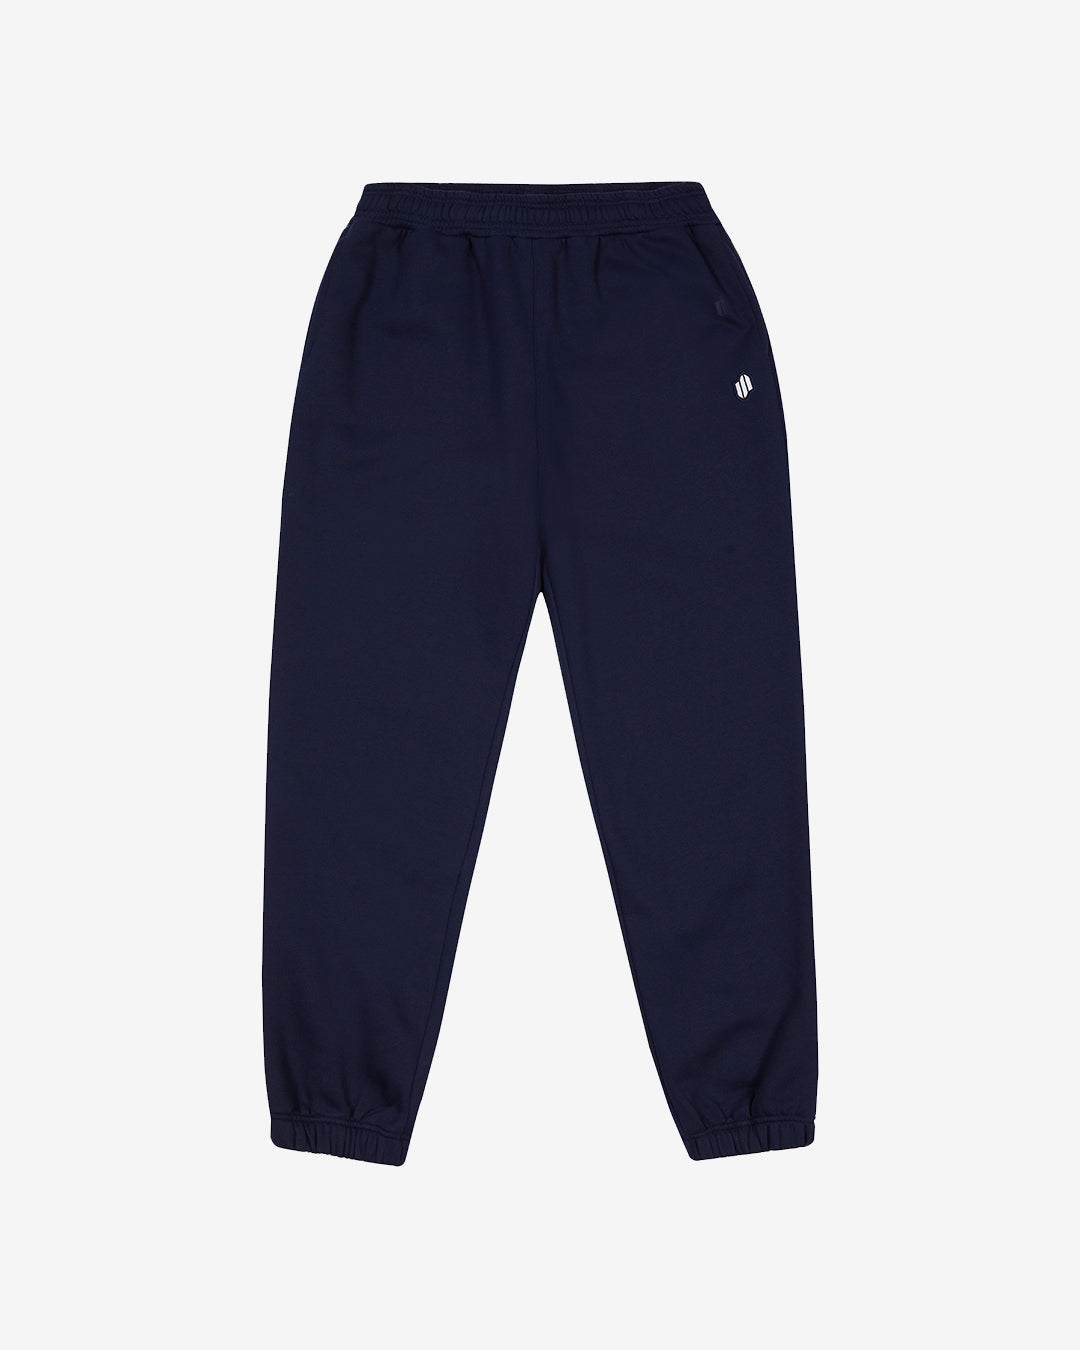 PFC: 002-4 - Women's Sweatpants - Navy